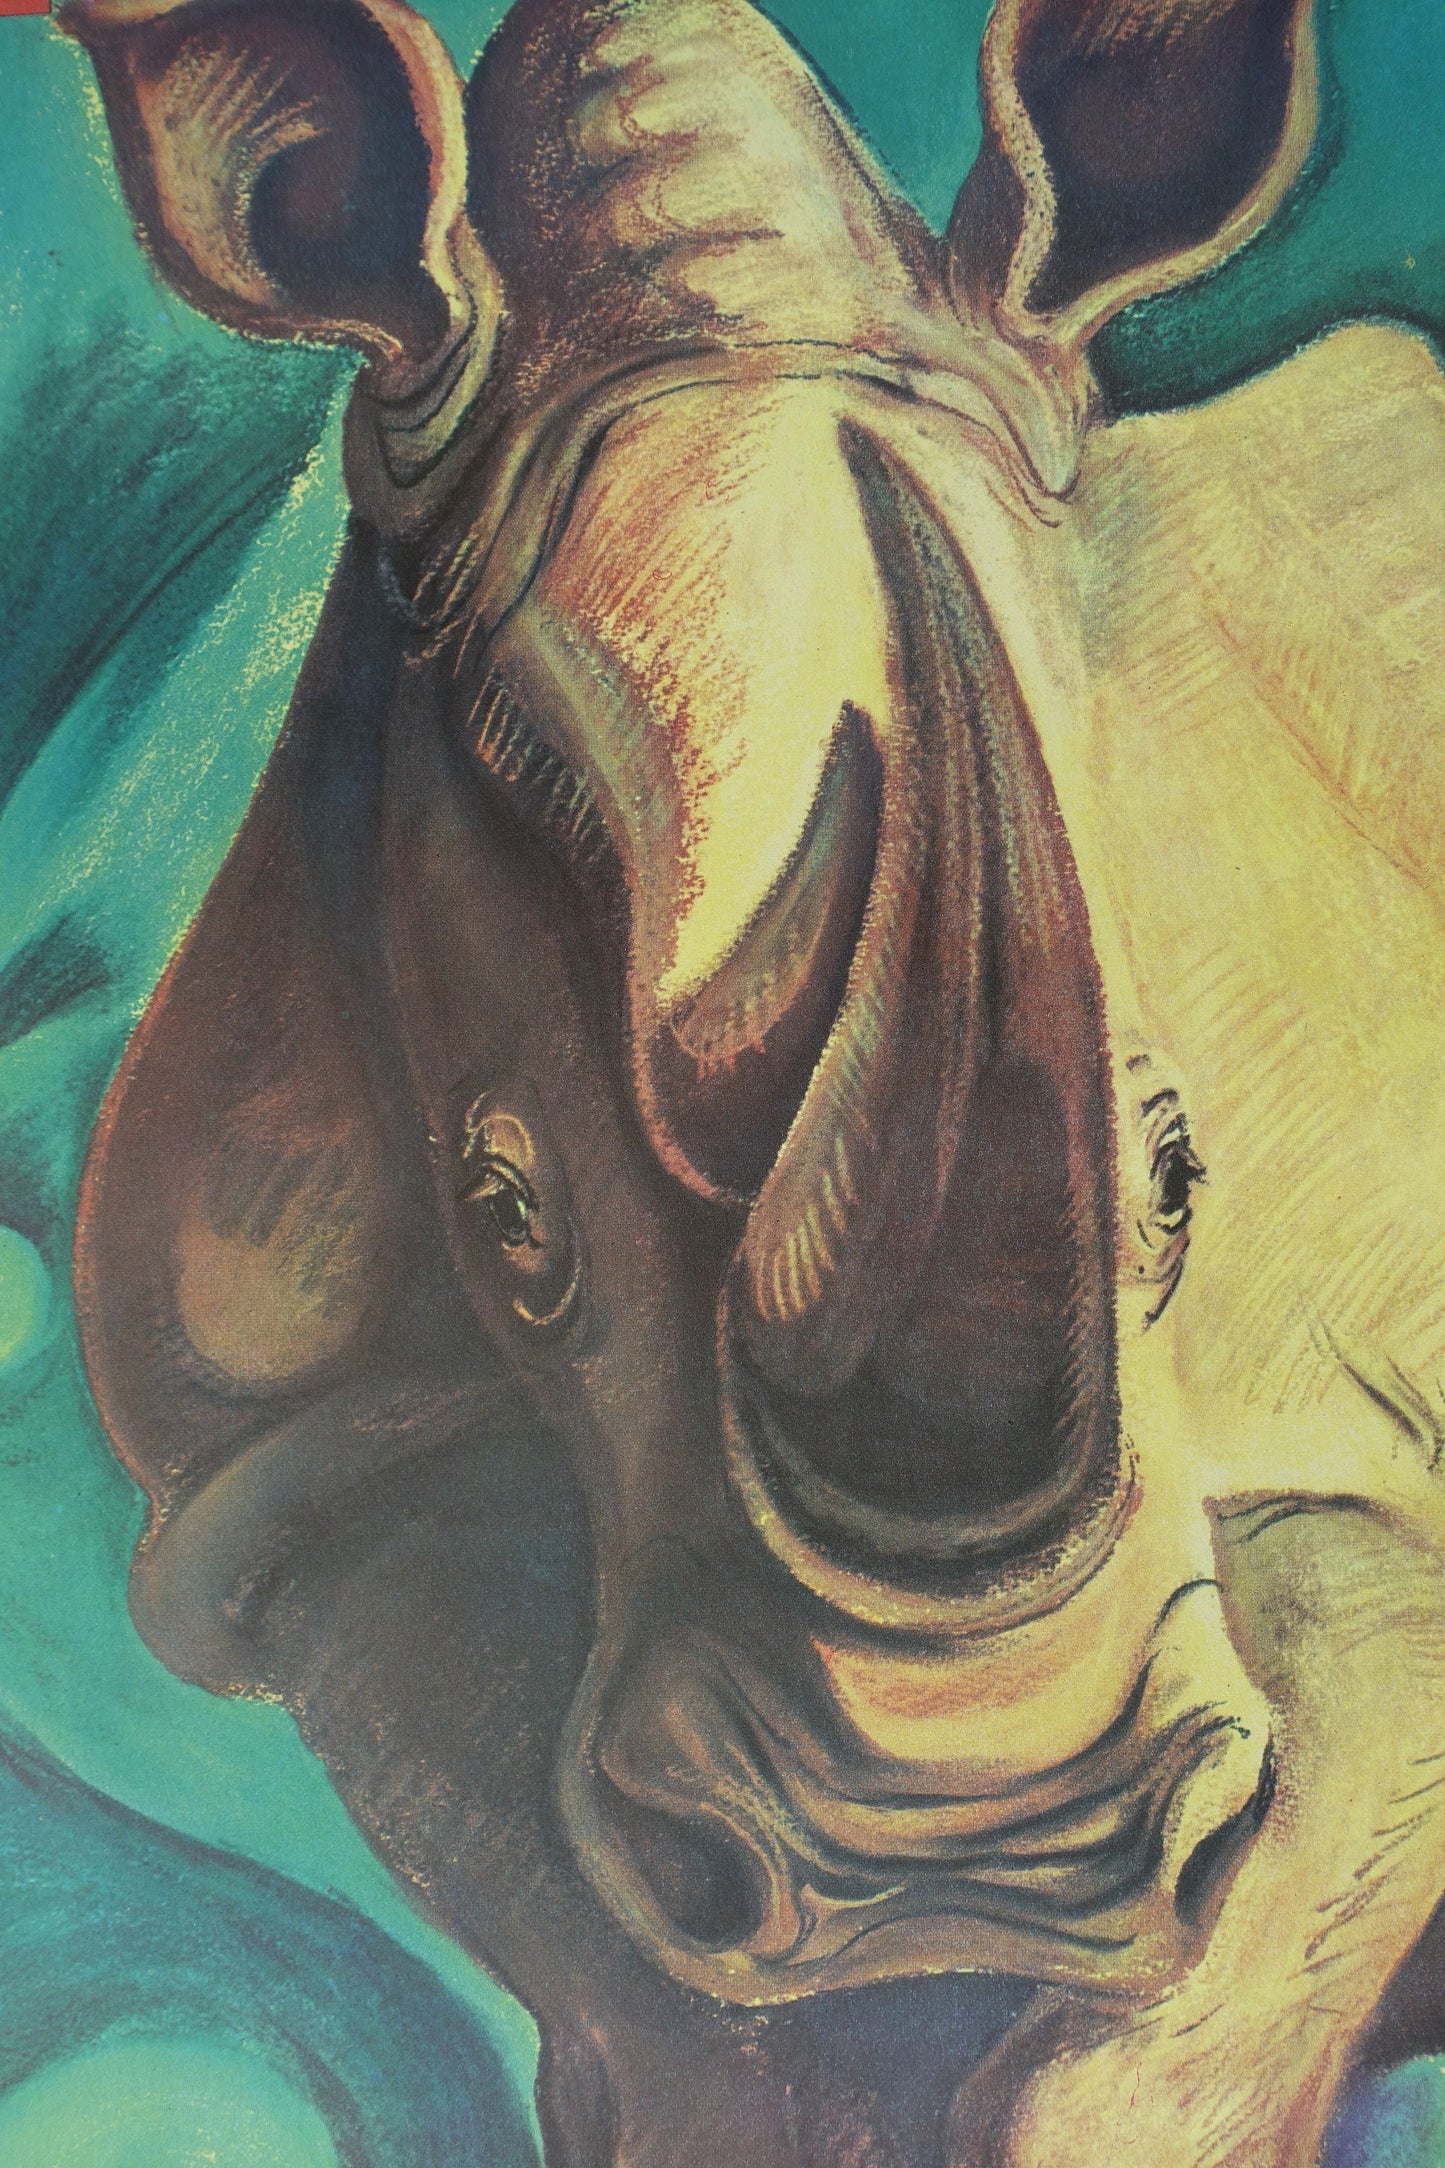 1969 Tierpark Berlin (Rhino) - Original Vintage Poster